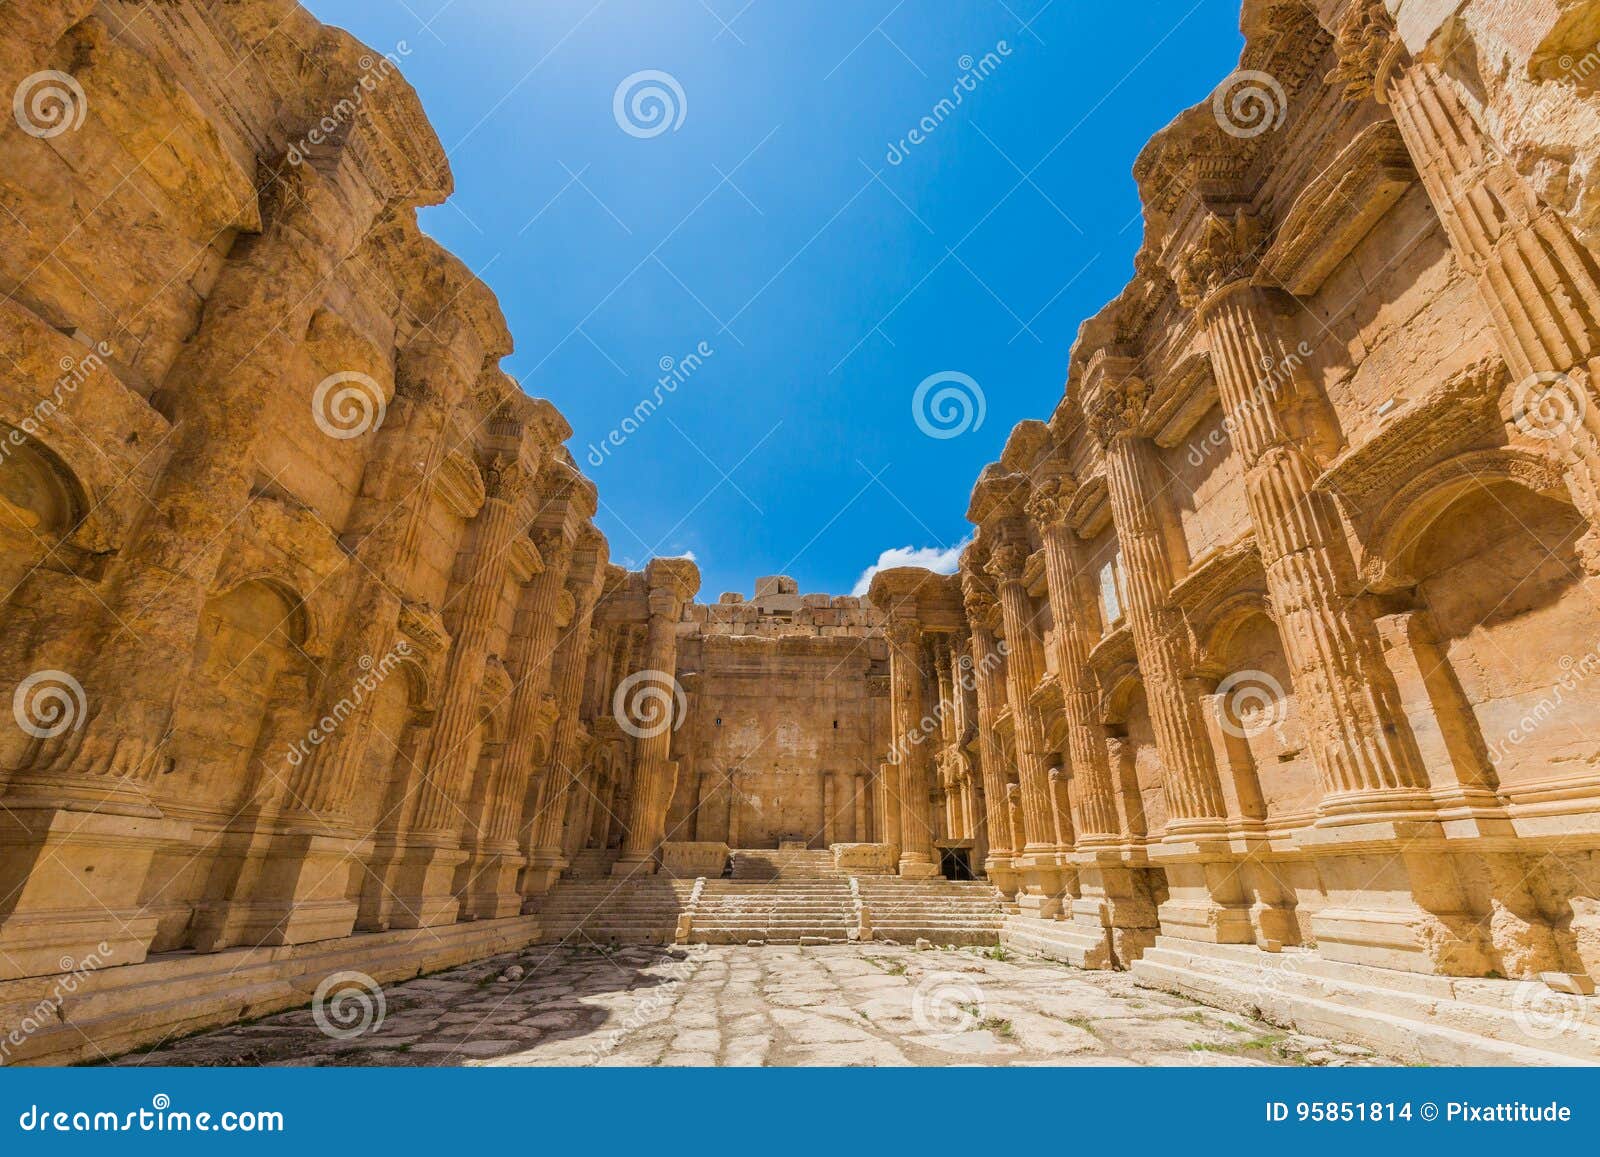 temple of bacchus romans ruins baalbek beeka lebanon